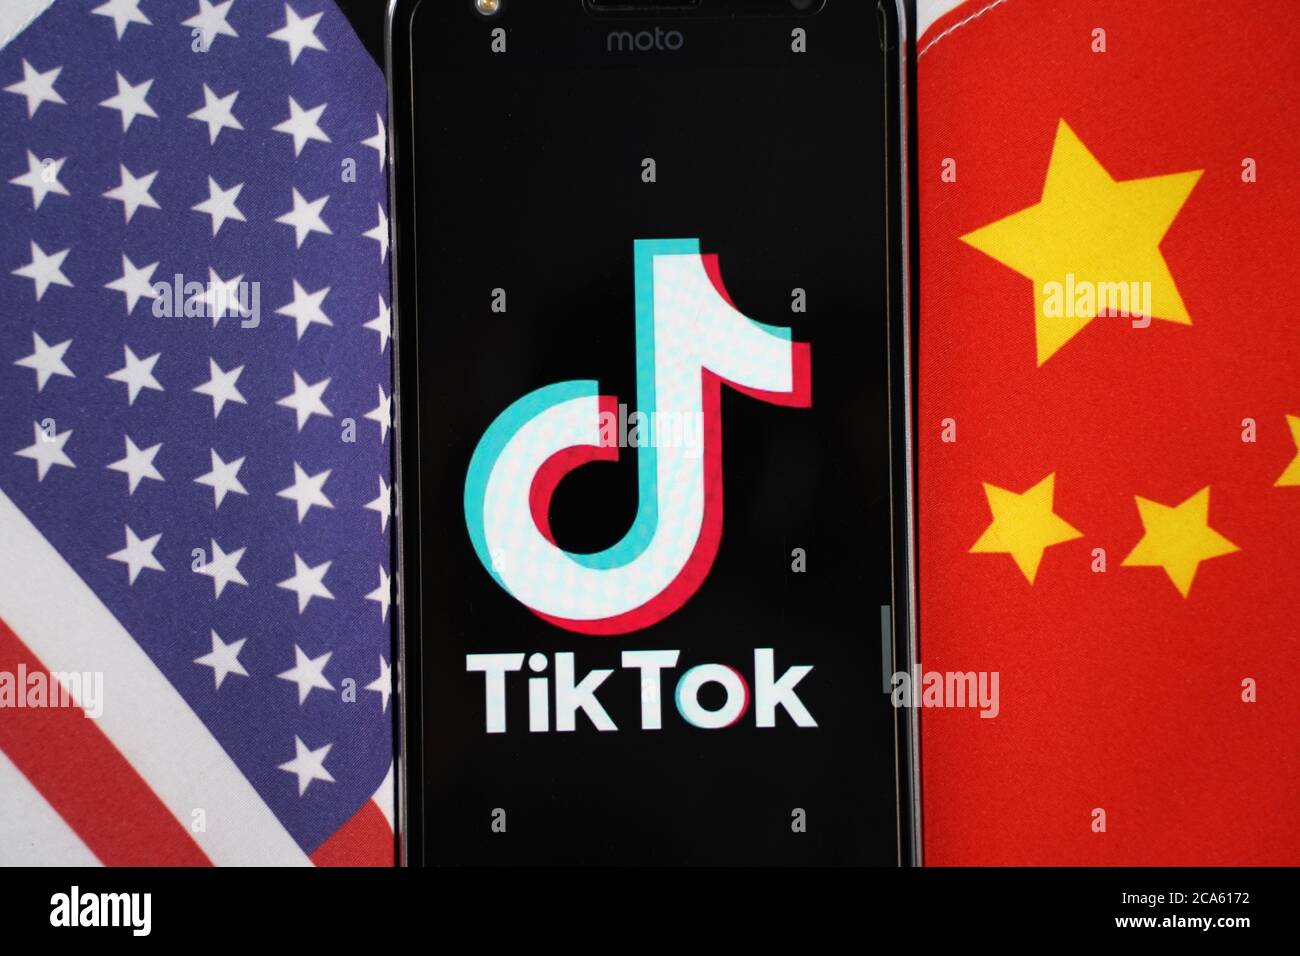 Maski, Indien 04, August 2020 - TikTok App-Logo auf einem Smartphone-Bildschirm zwischen China und den Vereinigten Staaten - die App befindet sich im Zentrum des US-China-Handels Stockfoto